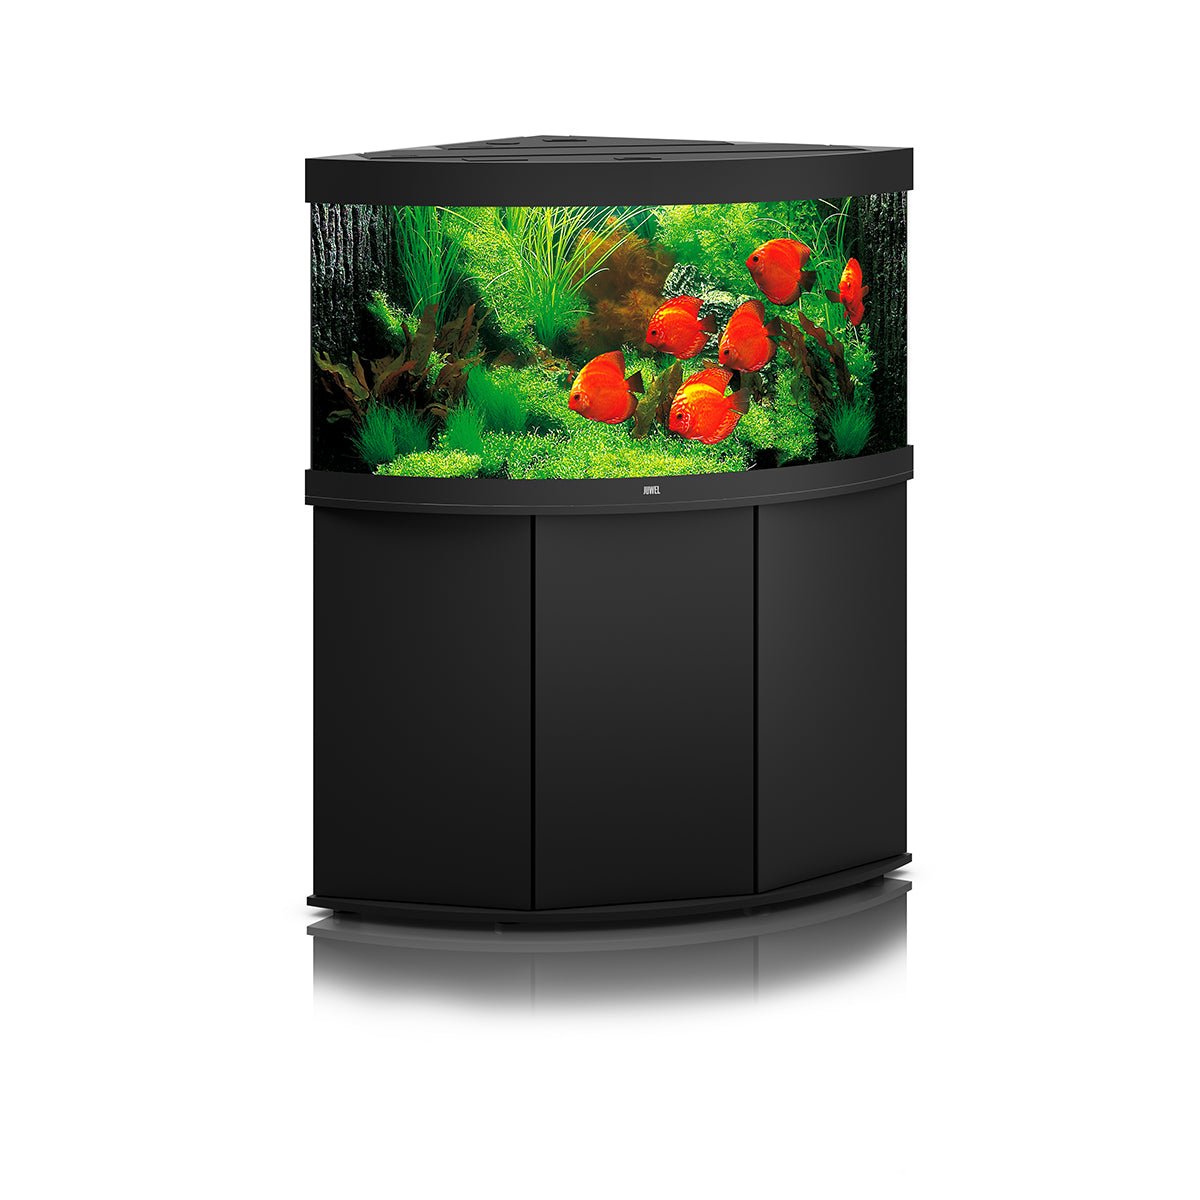 Juwel Trigon 350 LED Aquarium and Cabinet (Black) - Charterhouse Aquatics